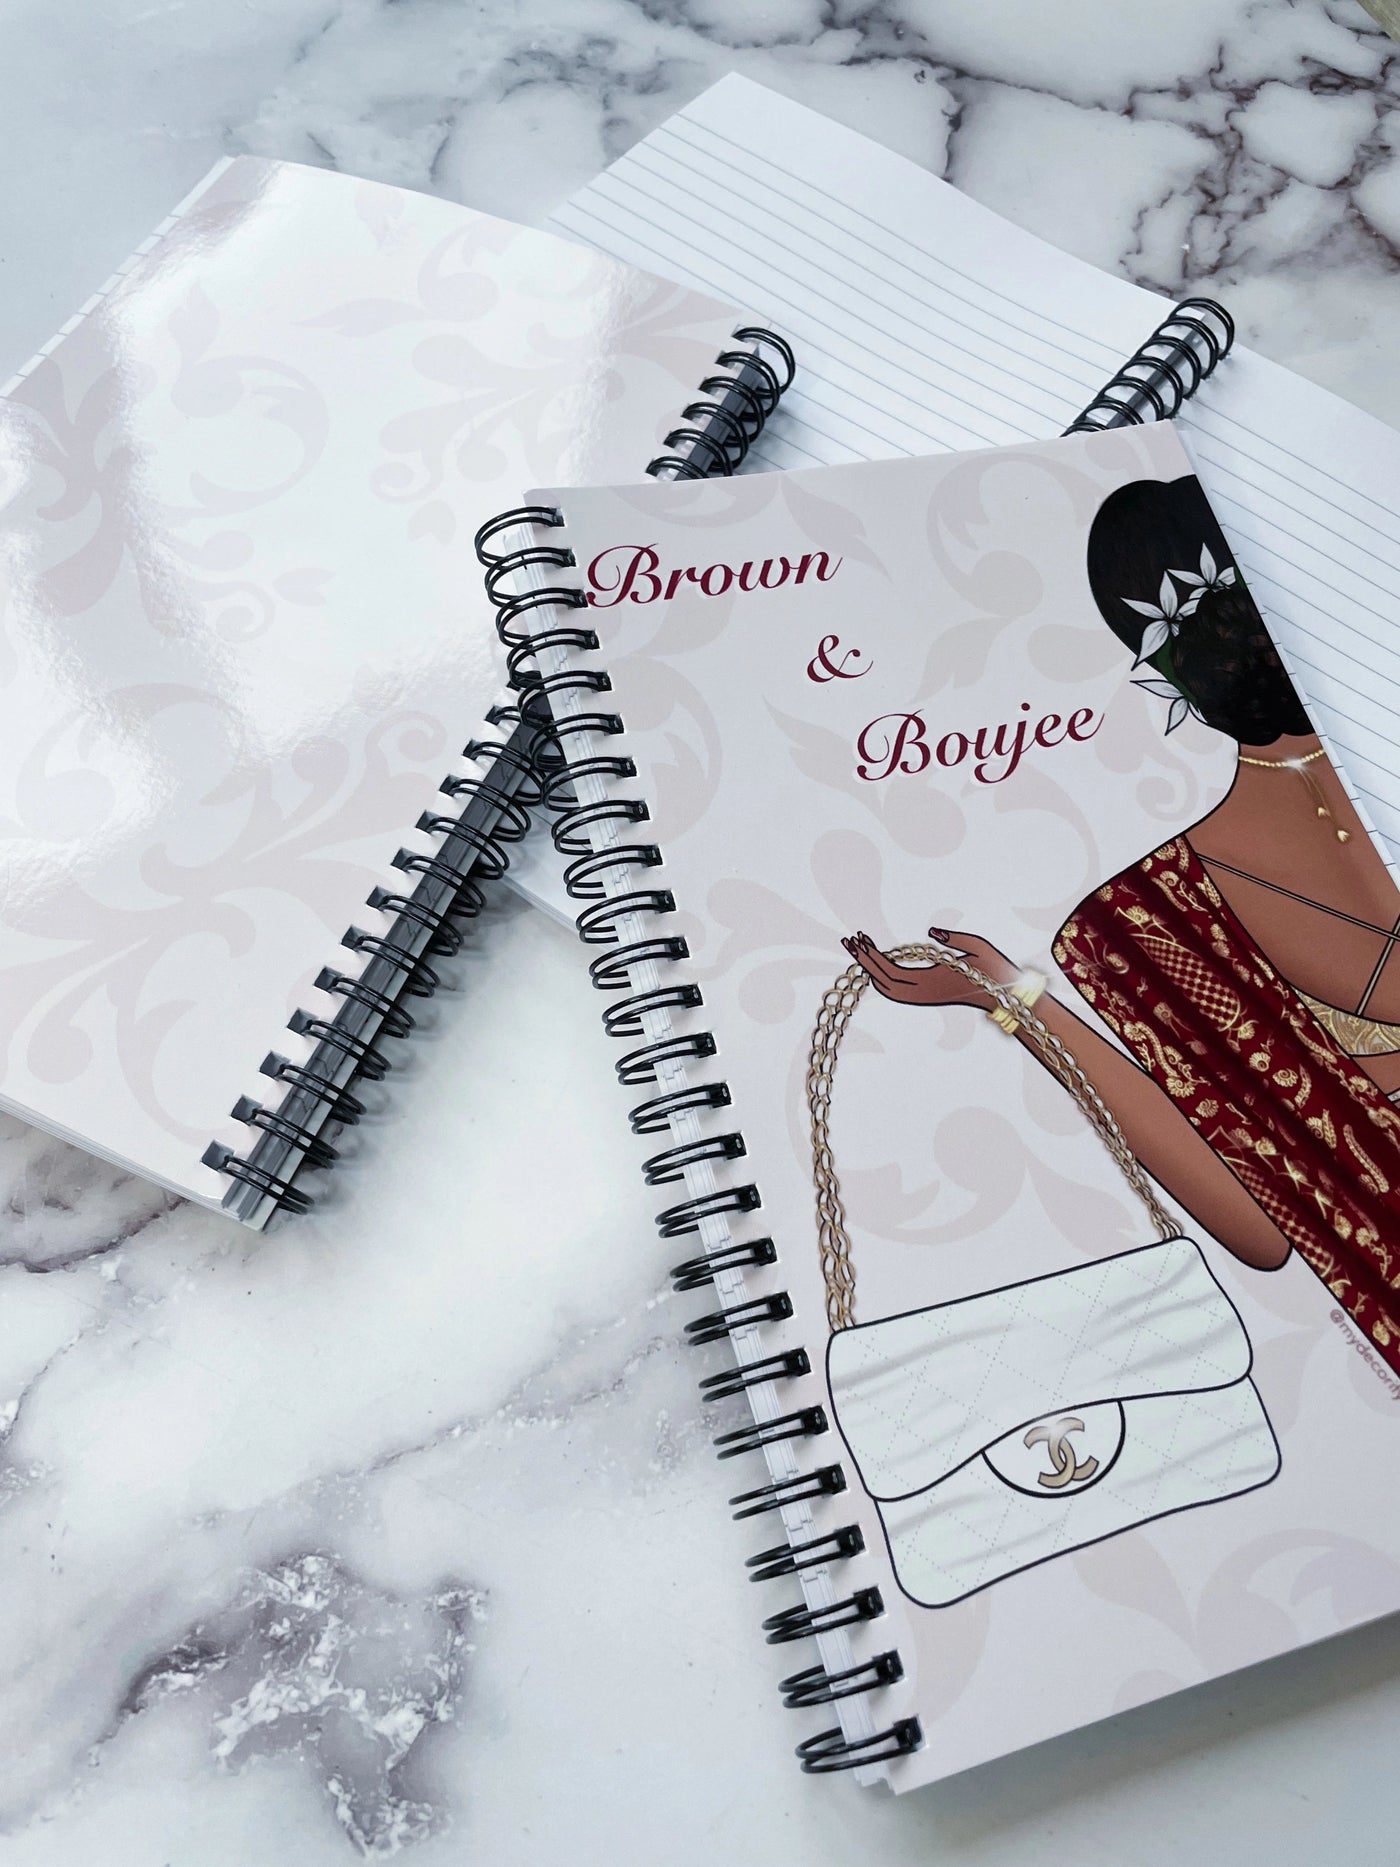 Brown & Boujee Notebook